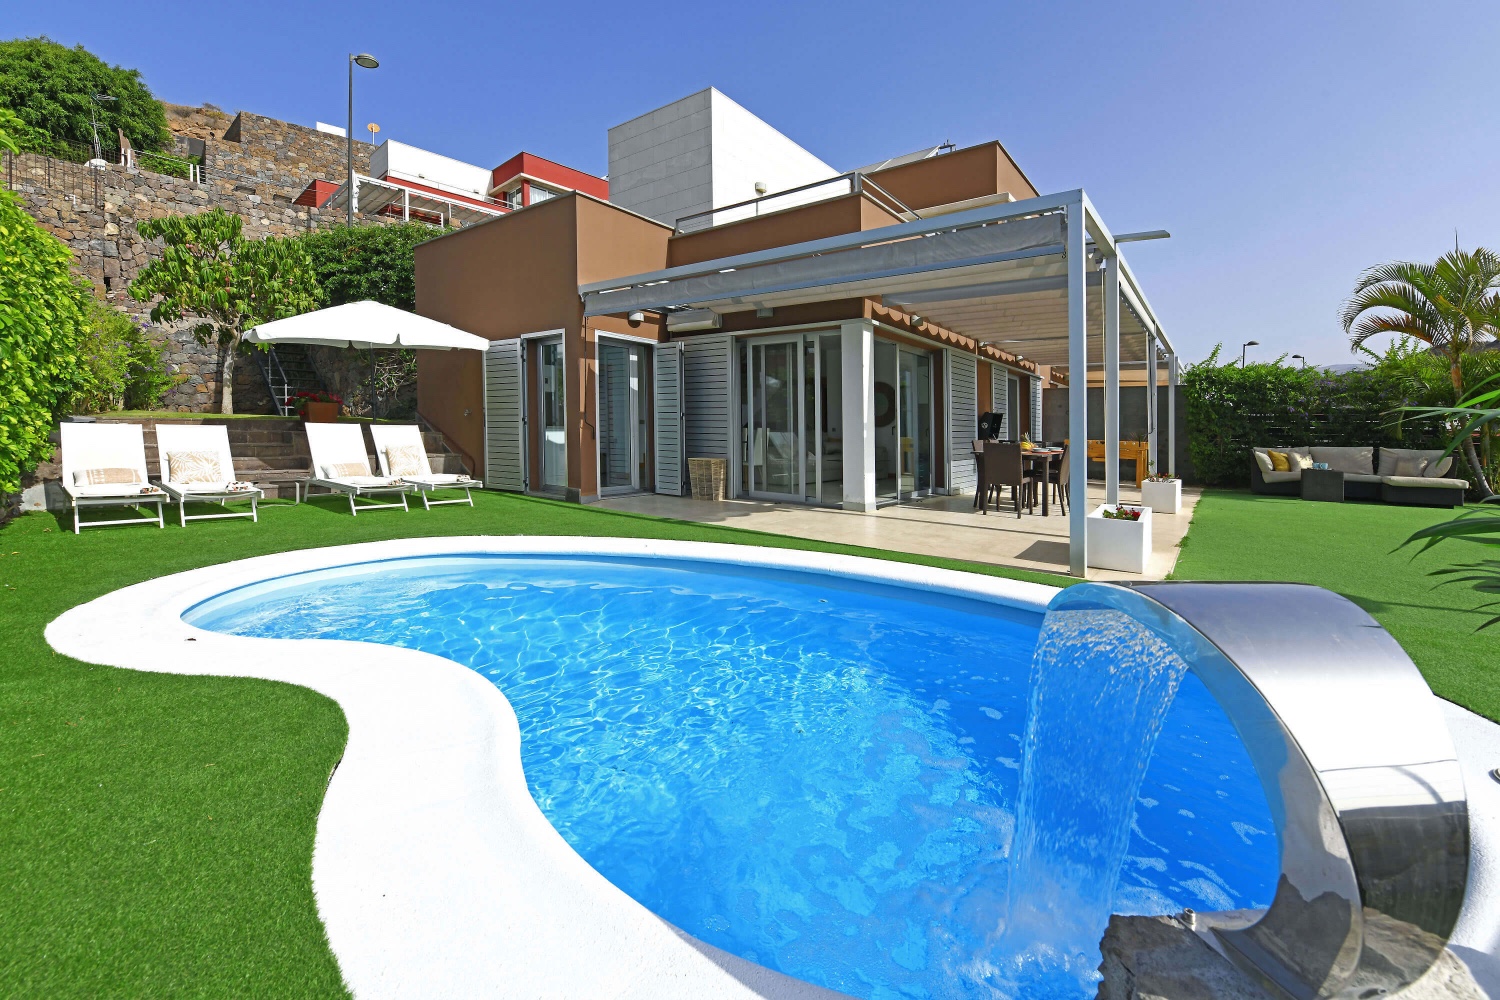 Maison moderne avec un bel espace extérieur avec une piscine privée chauffée et de belles vues sur le golf nord